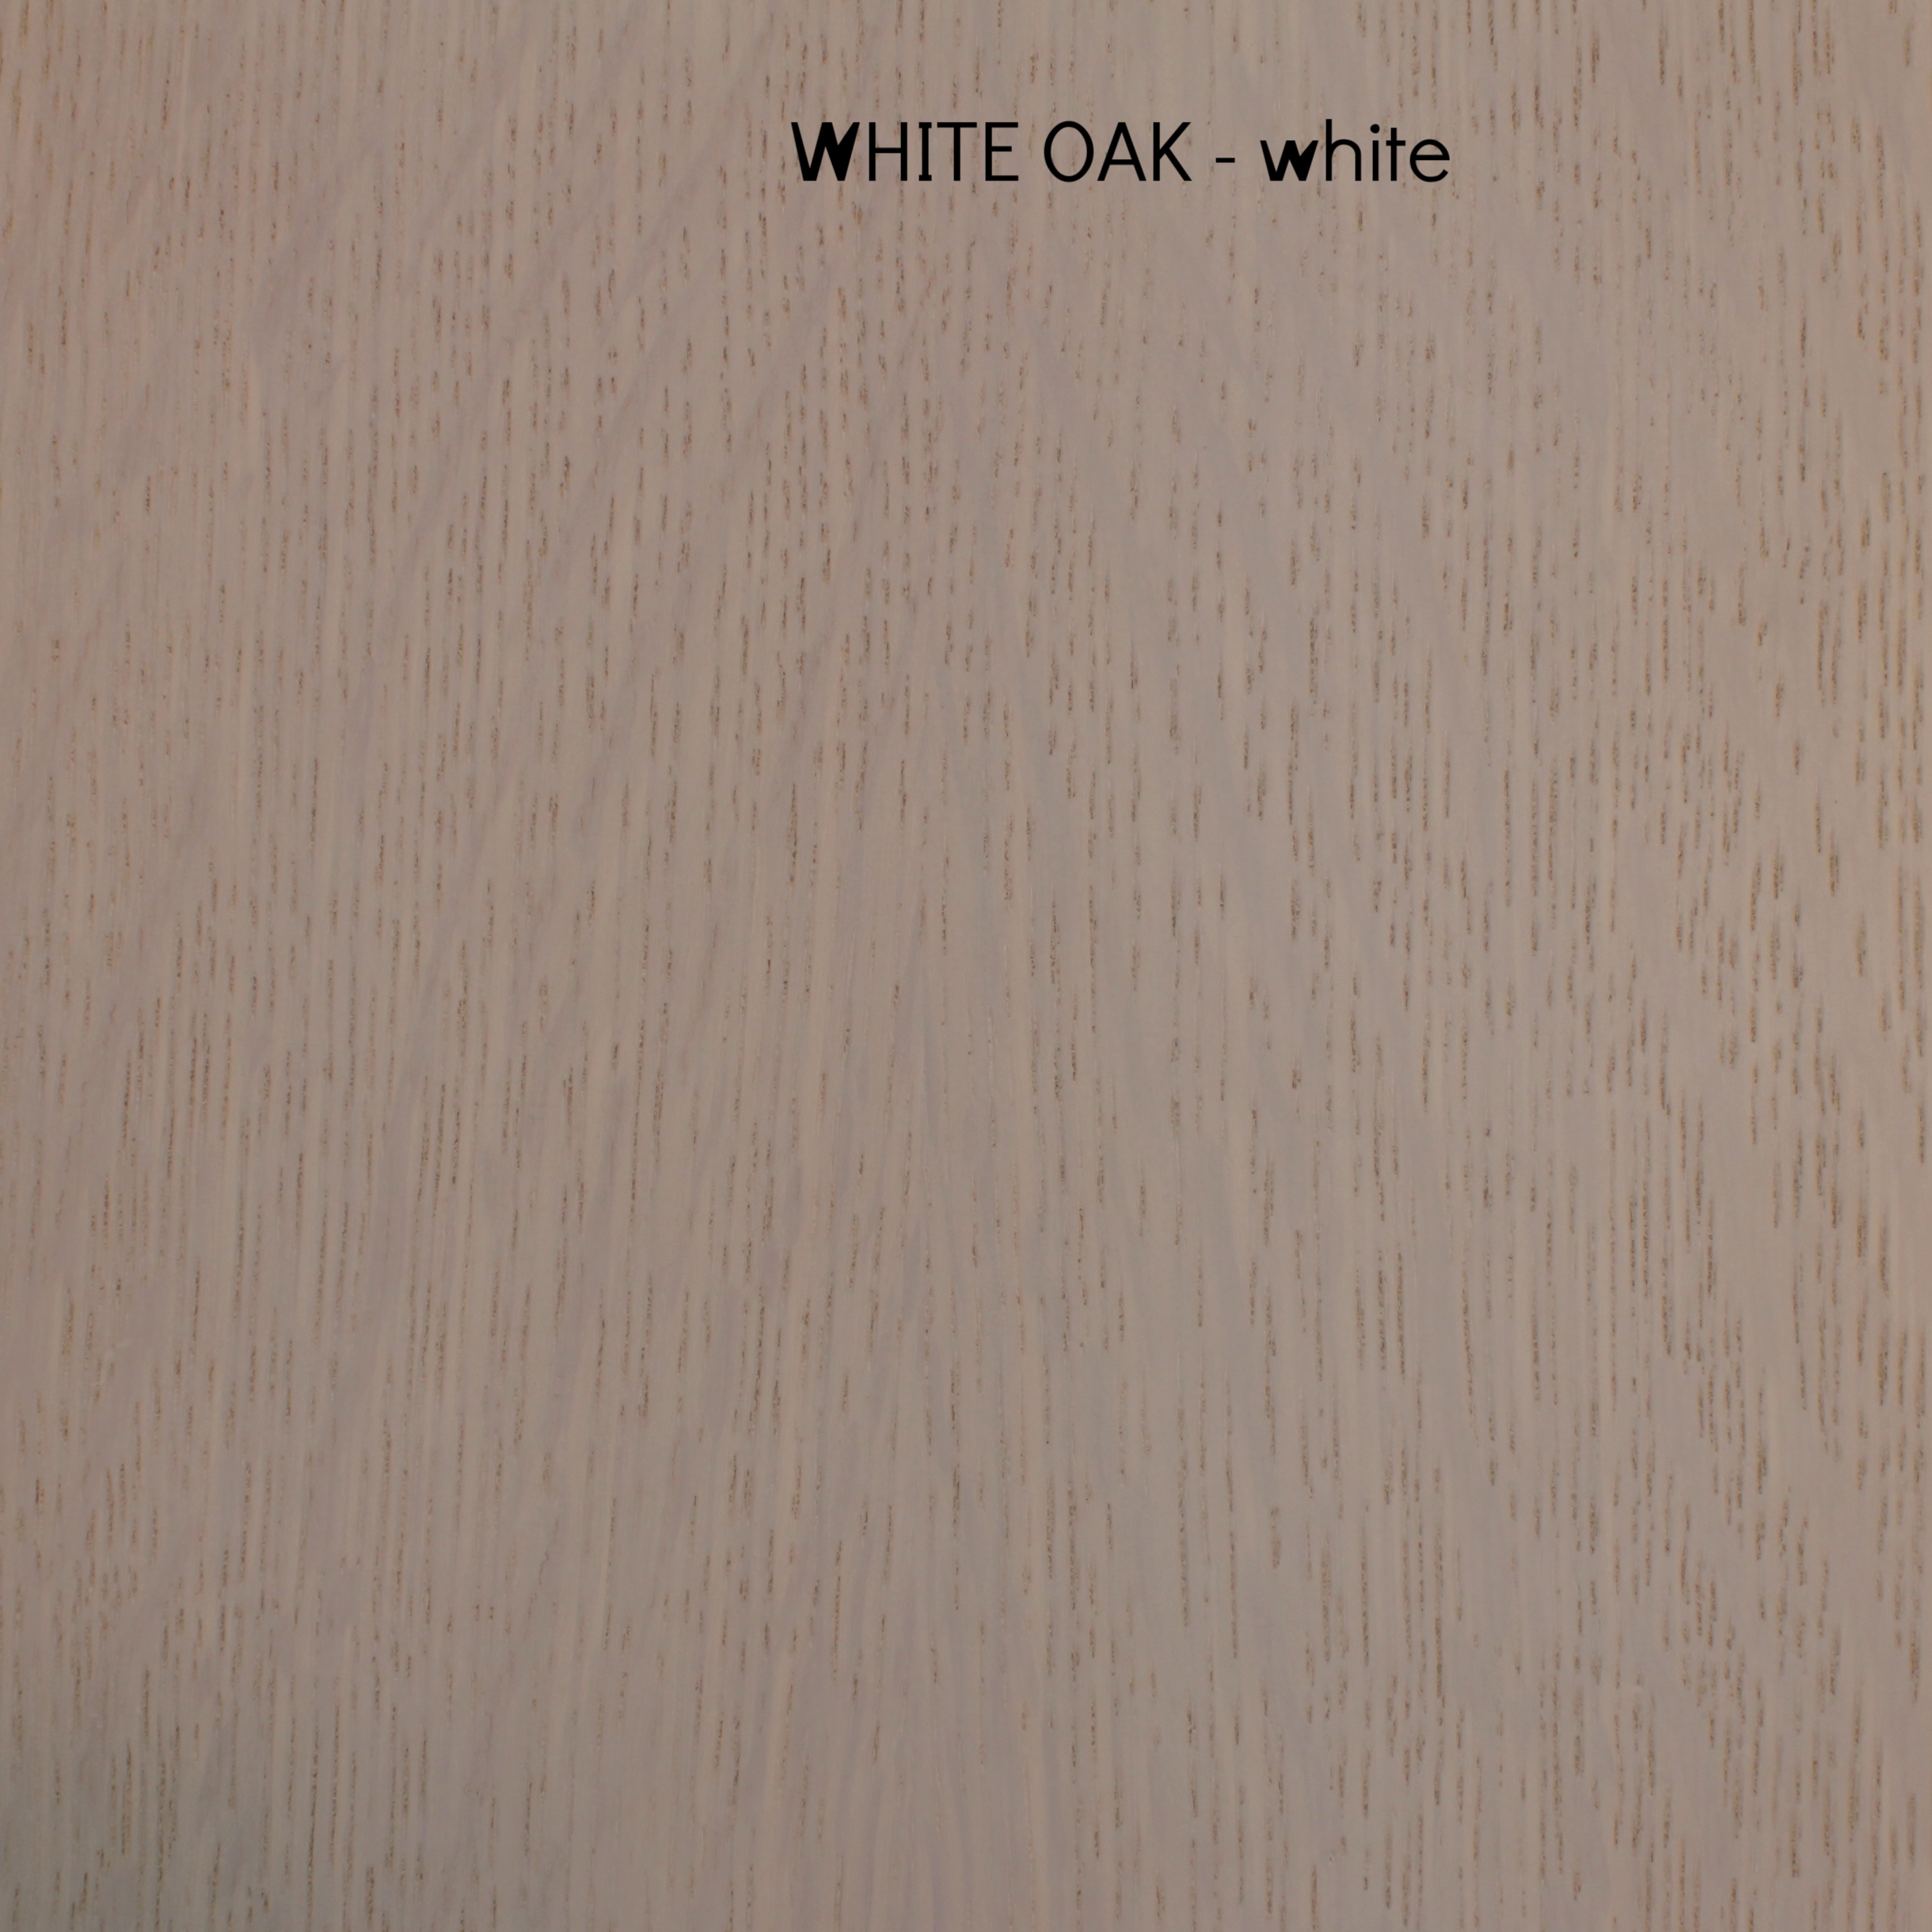 oak, white - white.jpg